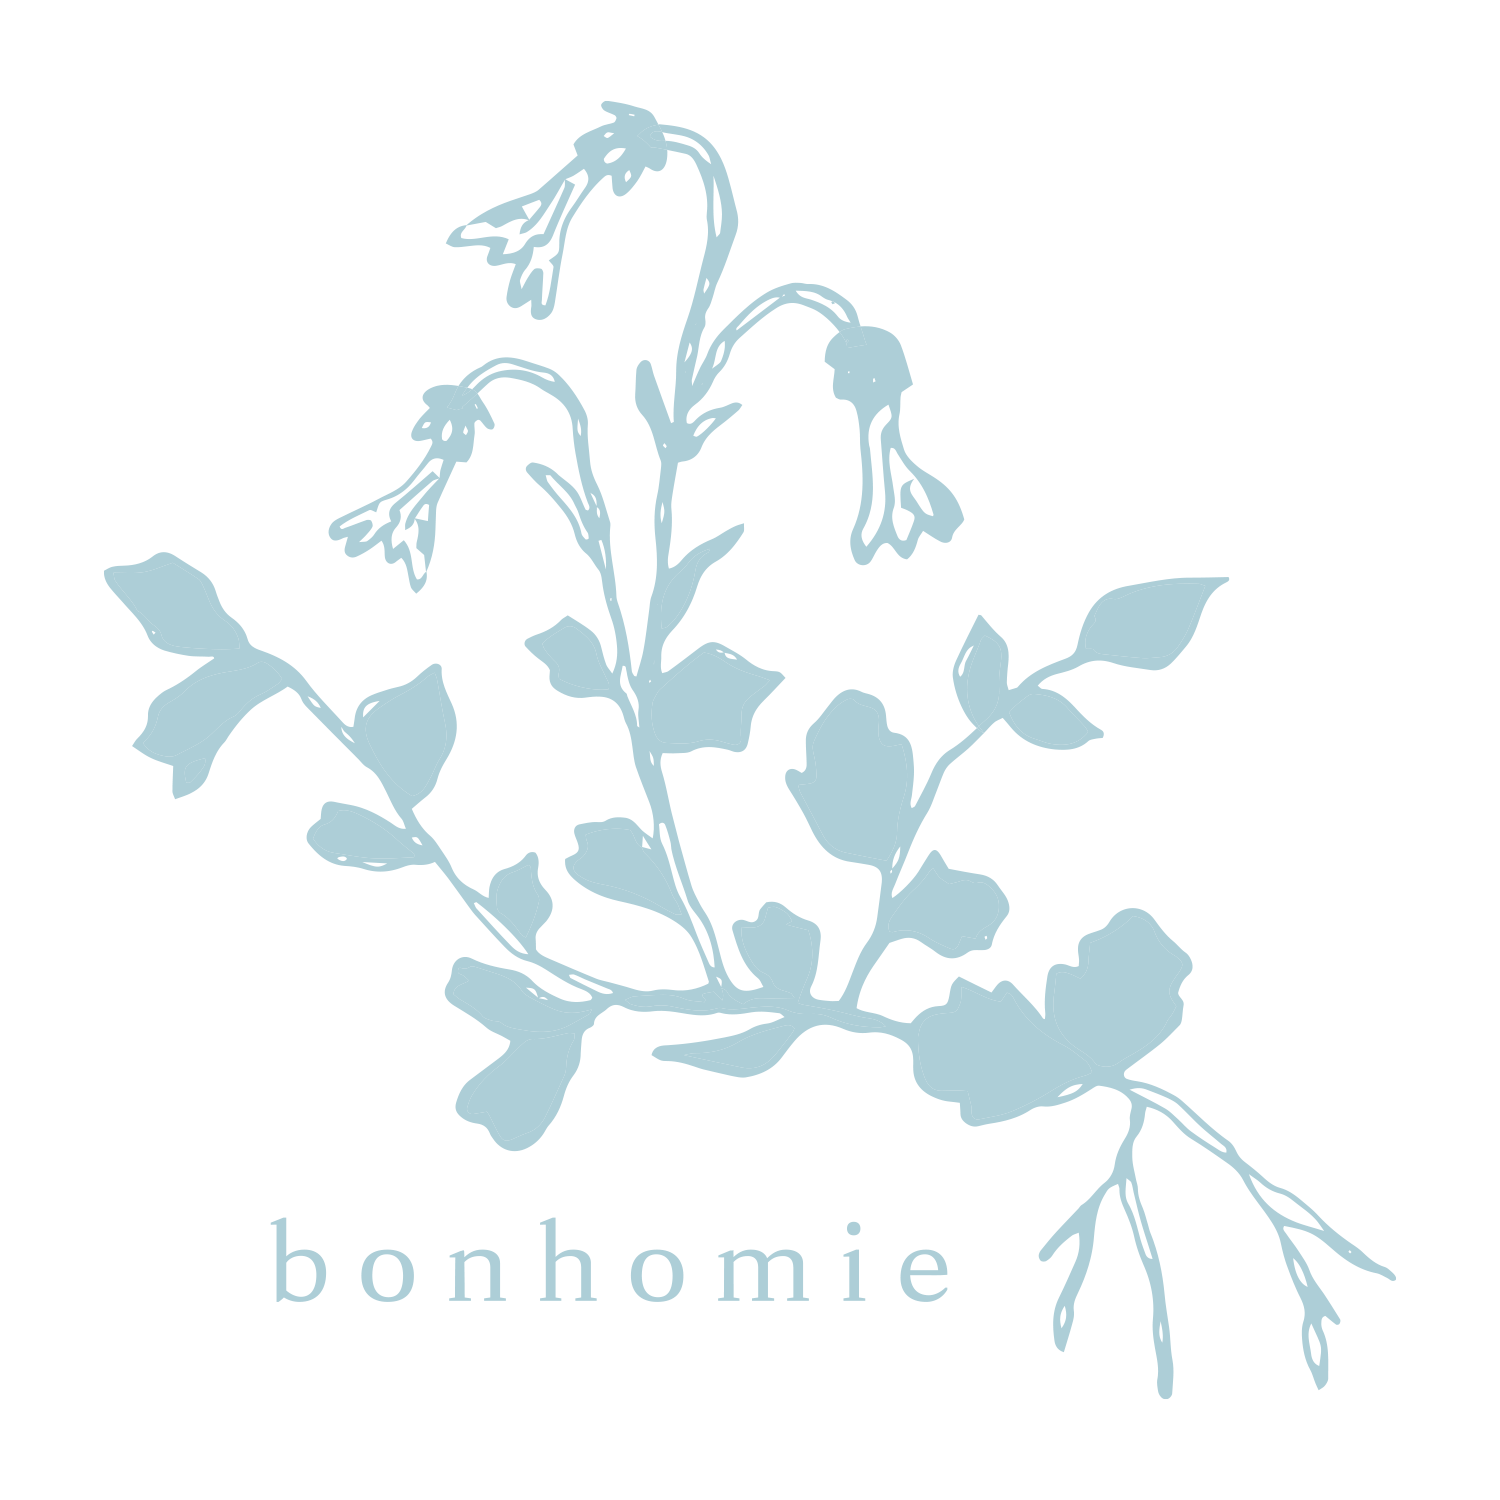 Bonhomie